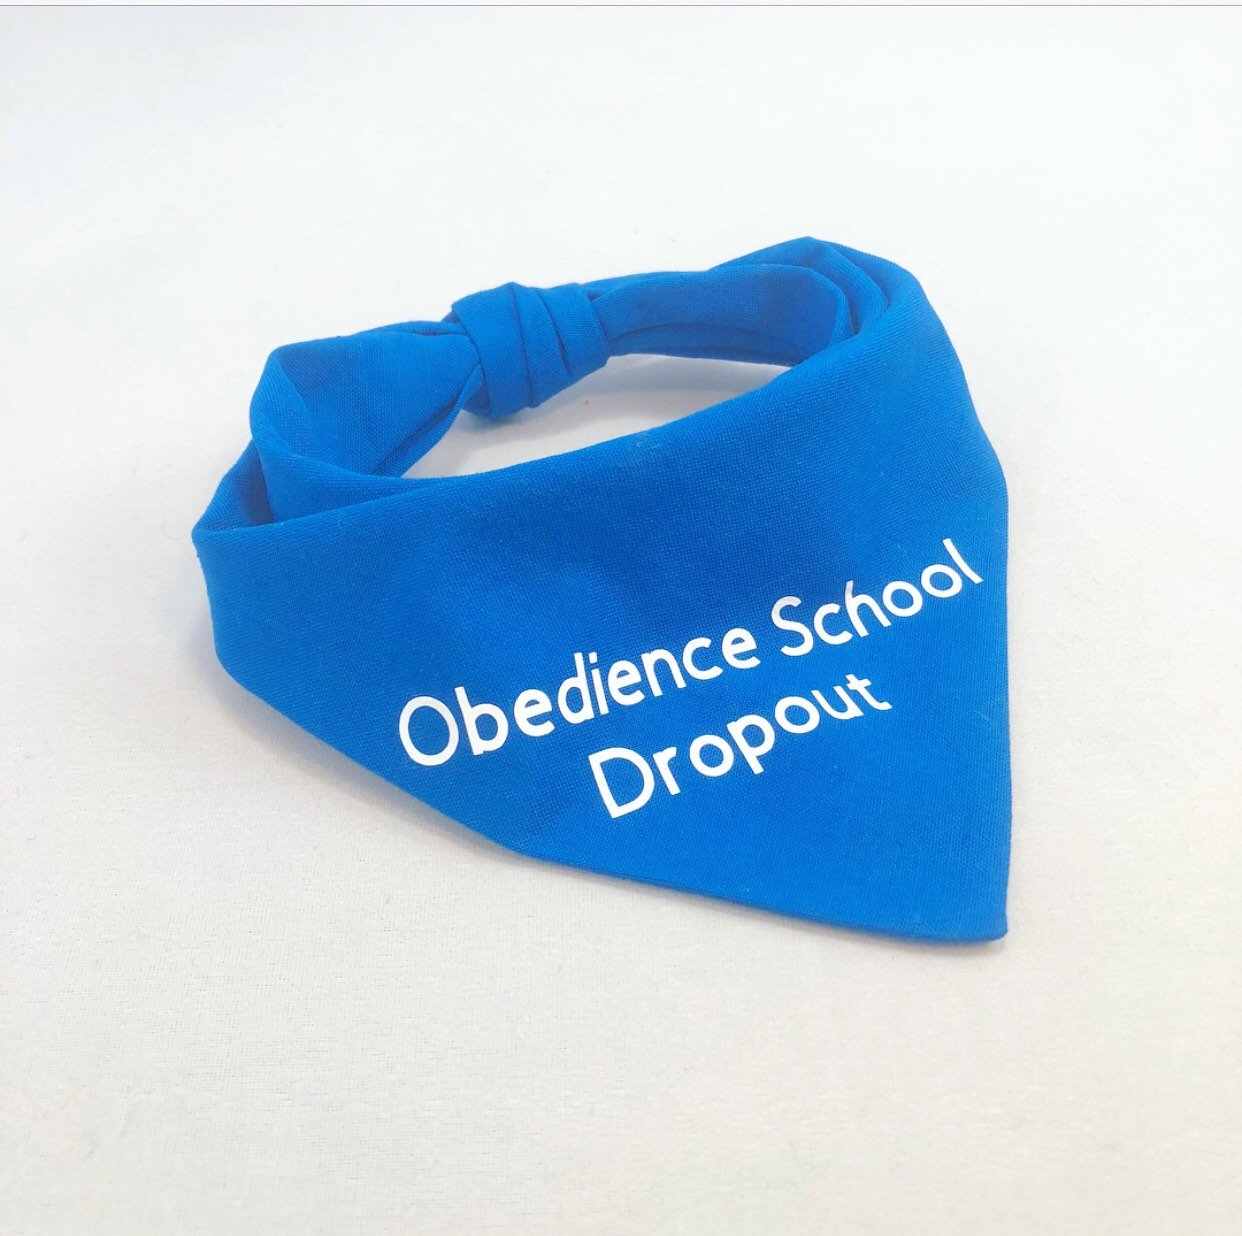 "Obedience School Dropout" Bandana